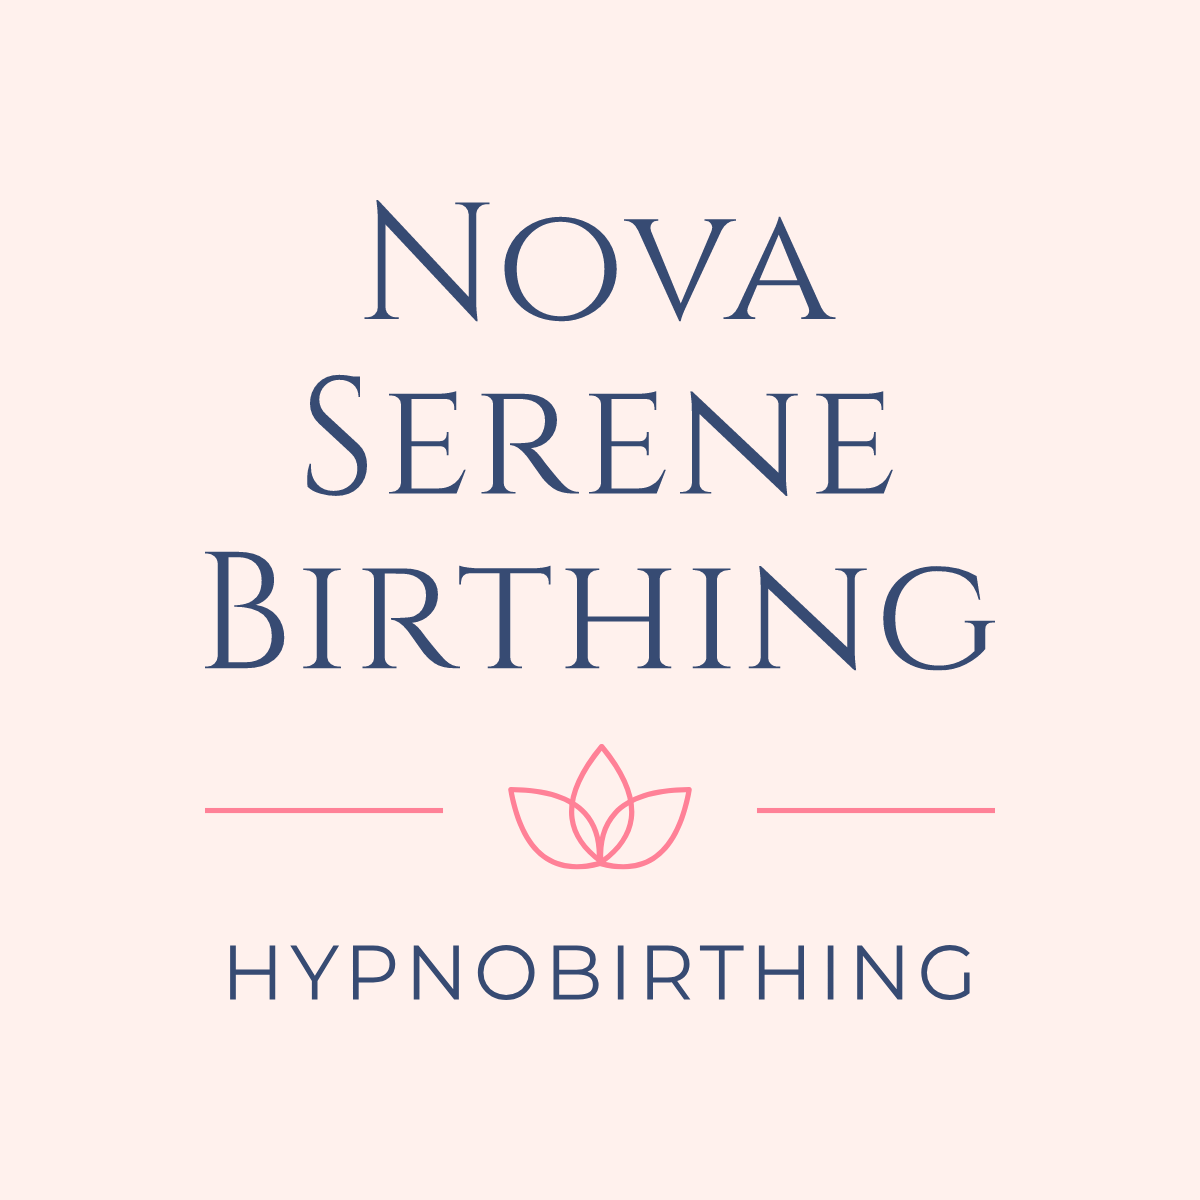 Nova Serene Birthing - Hypnobirthing & Relaxation 's logo